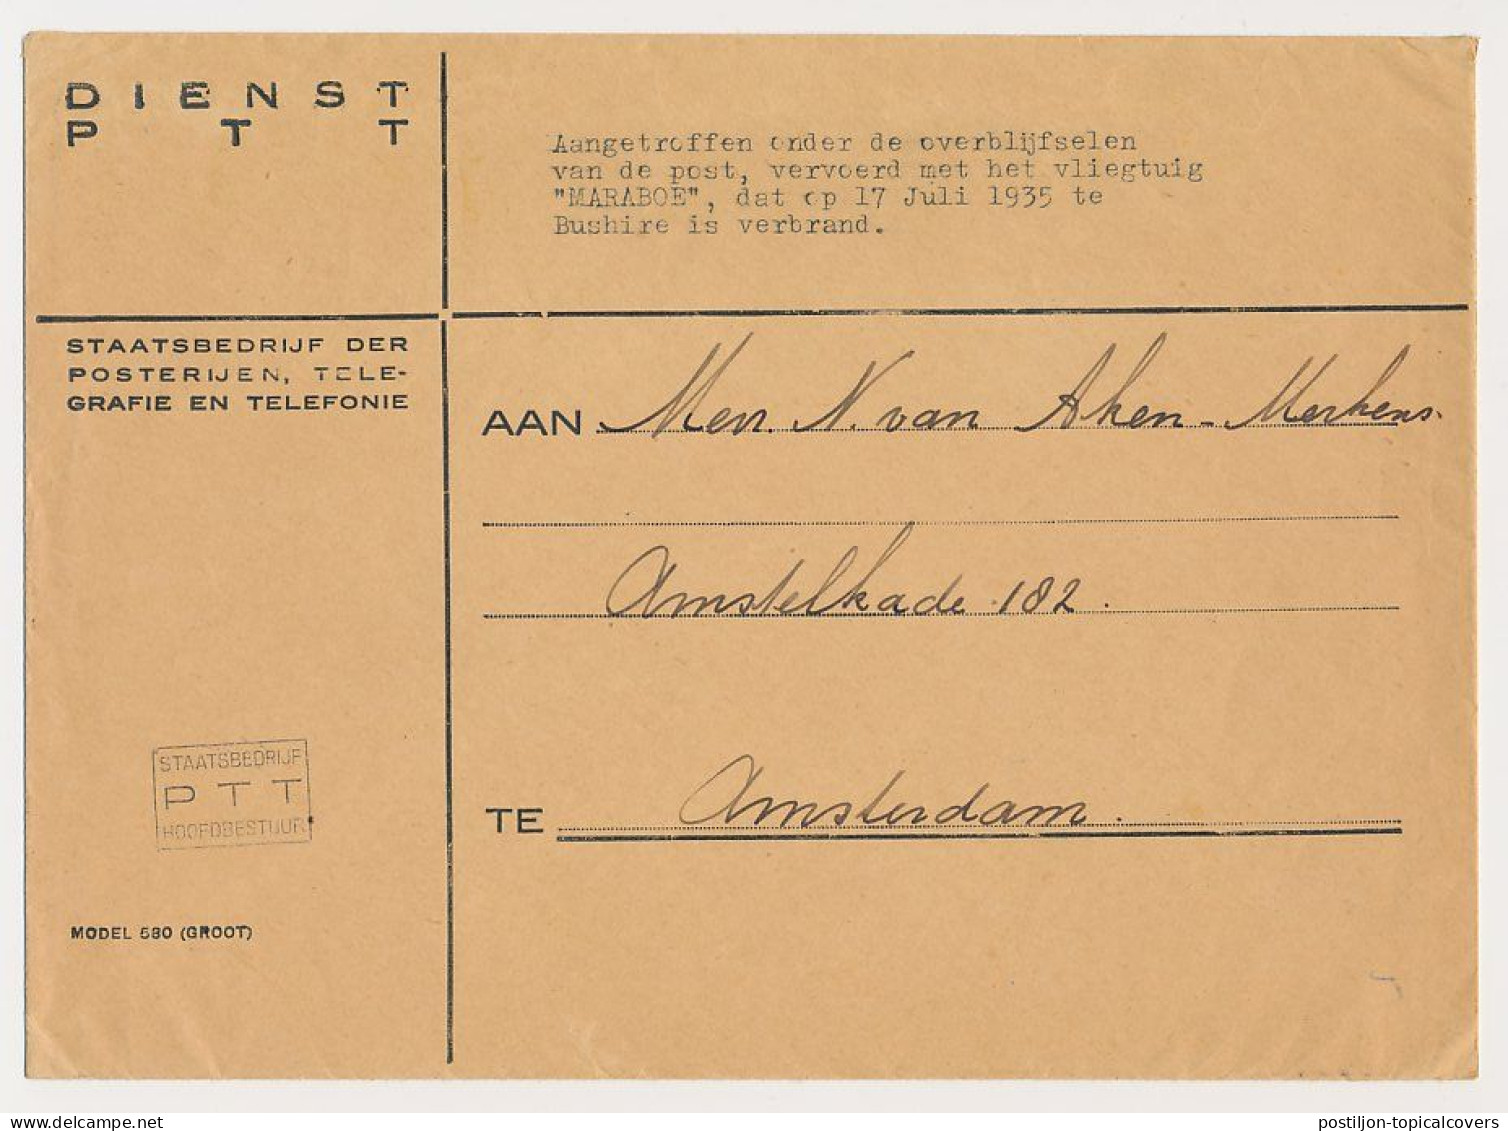 Crash Mail Cover Netherlands Indies - Amsterdam 1935 - Nierinck 350717 - Bushire Iran - Maraboe - Luchtpost